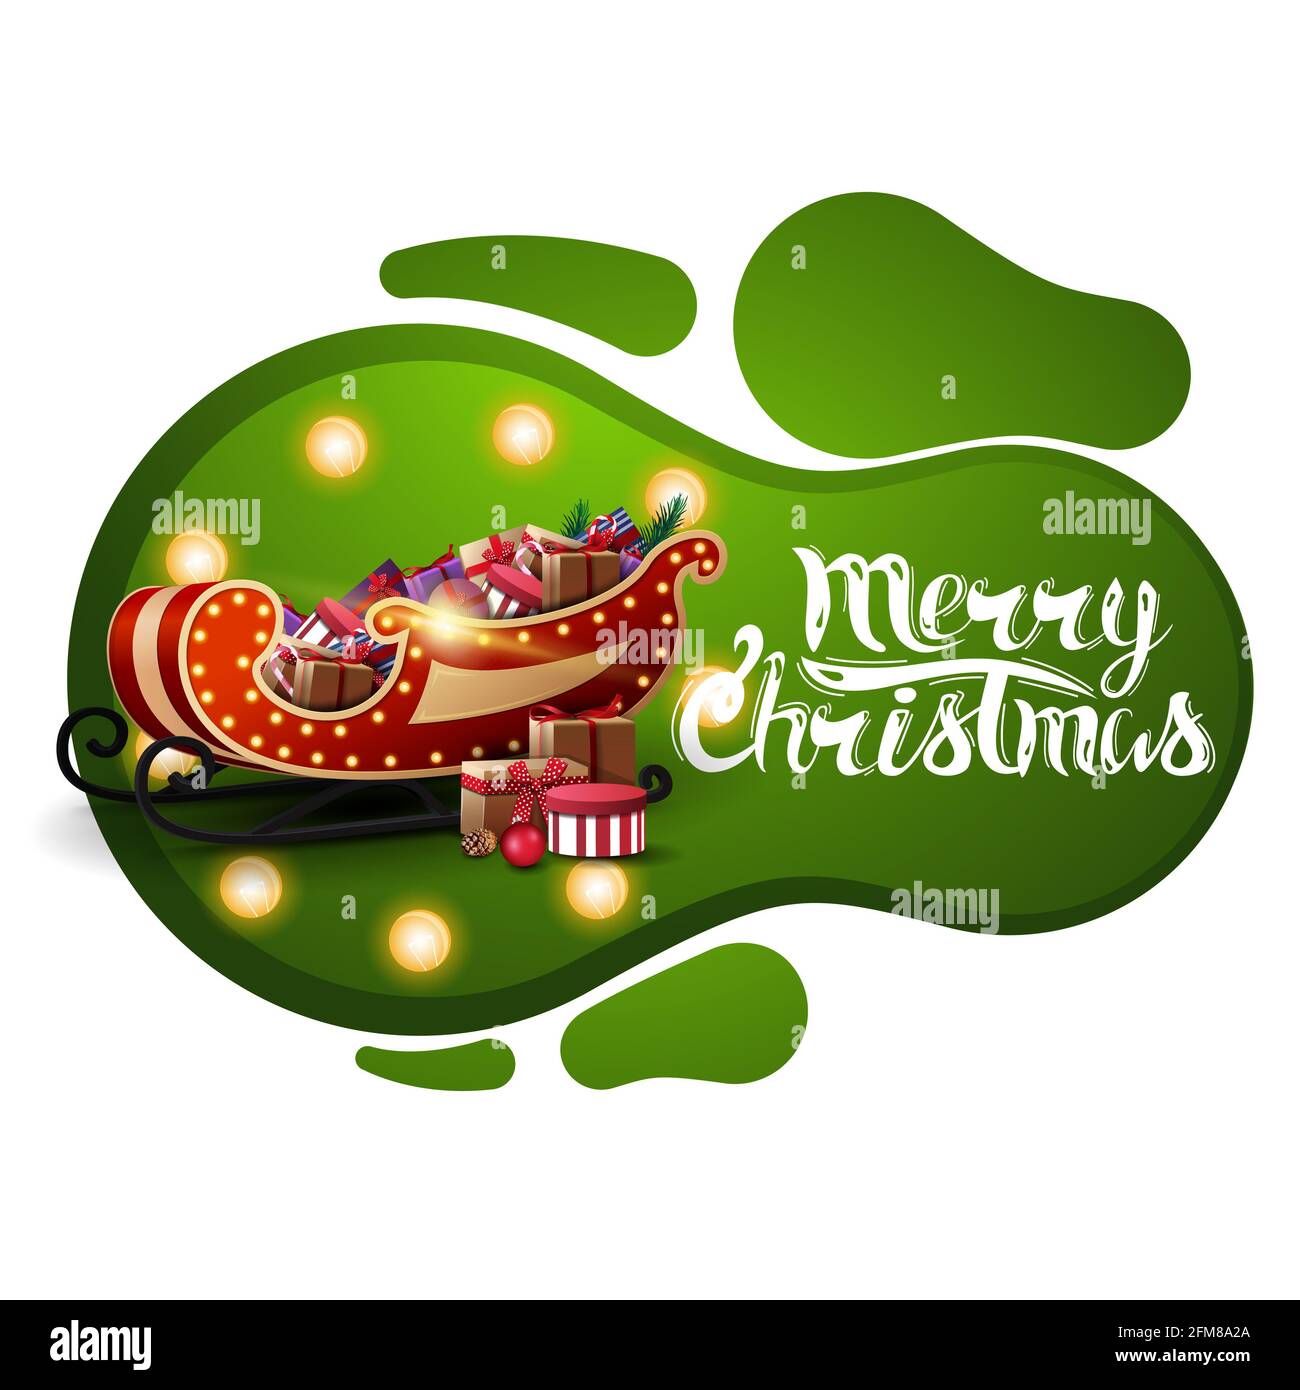 Joyeux Noël, carte postale verte en forme de lampe de lave avec ampoule jaune et Santa Sleigh avec des cadeaux isolés sur fond blanc Banque D'Images